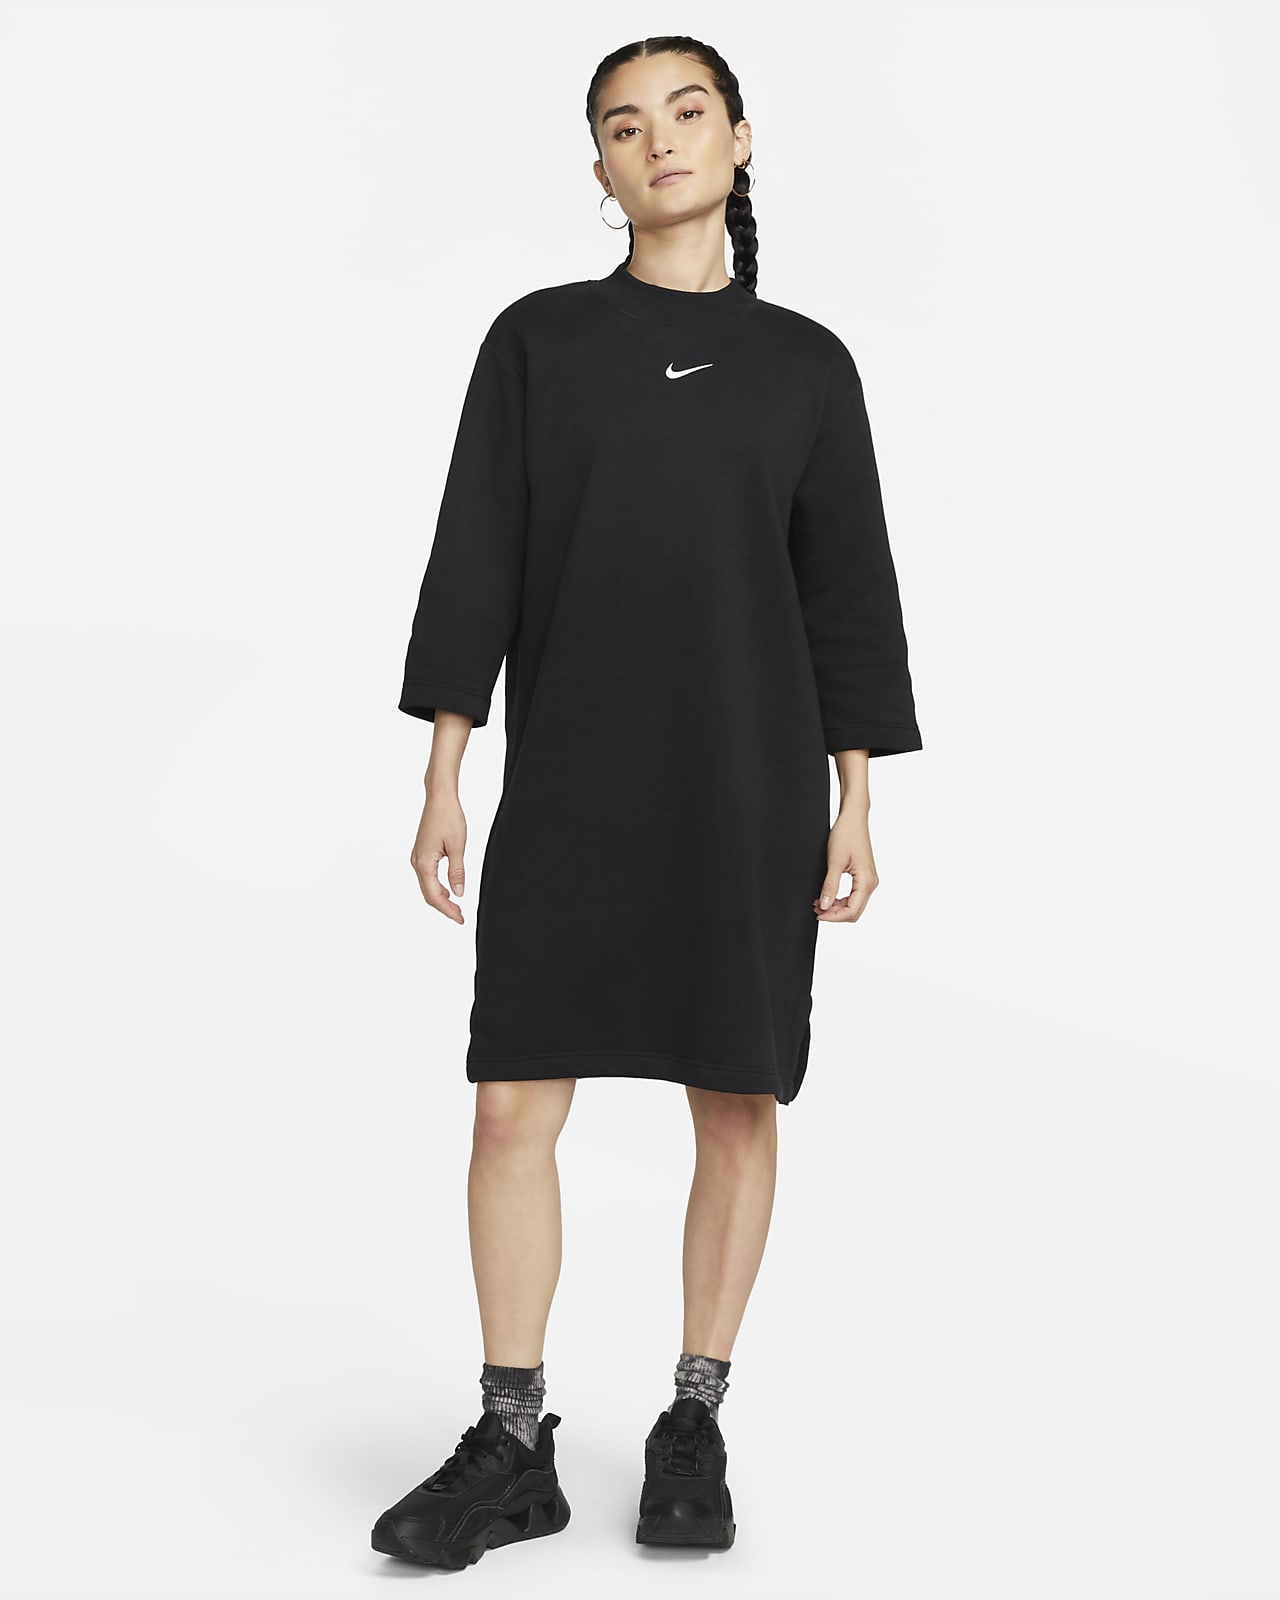 Γυναικείο φόρεμα με τρουακάρ μανίκια σε φαρδιά γραμμή Nike Sportswear Phoenix Fleece